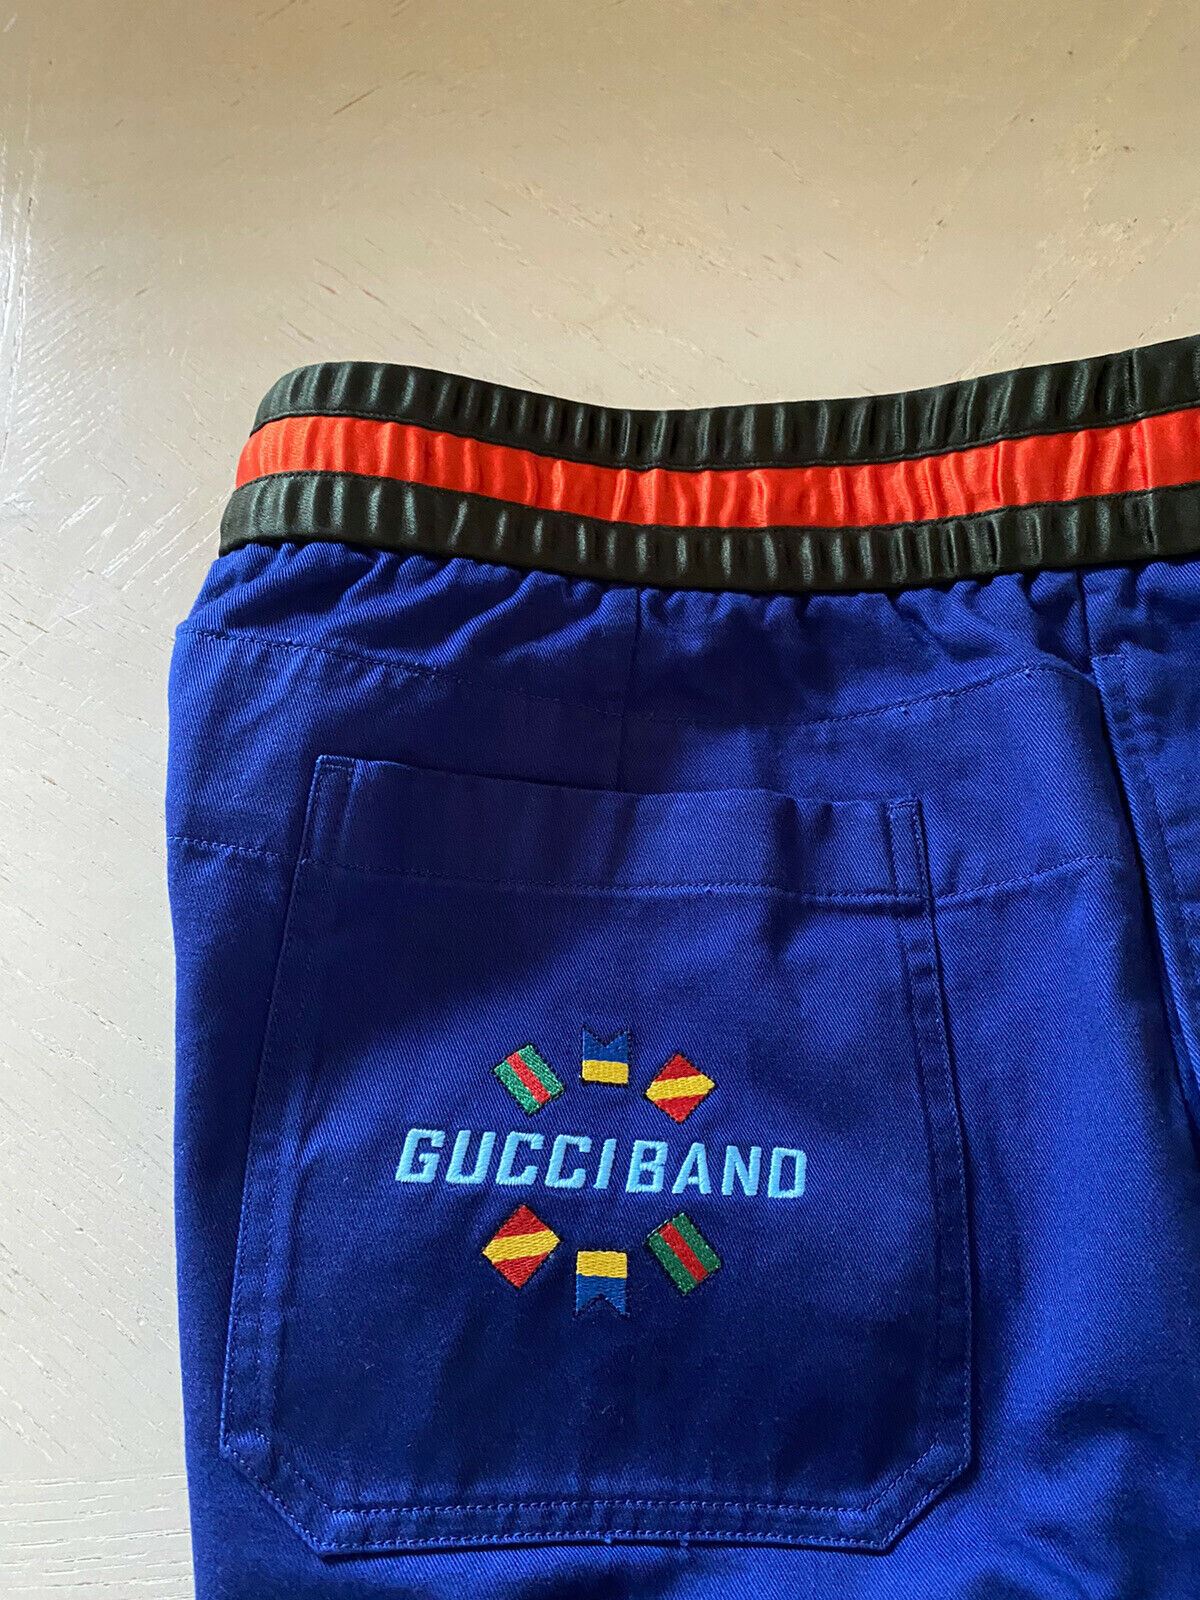 Новые мужские джеггинсы Gucci Band Gucci за 980 долларов США, синие 34 США (50 евро), сделано в Италии